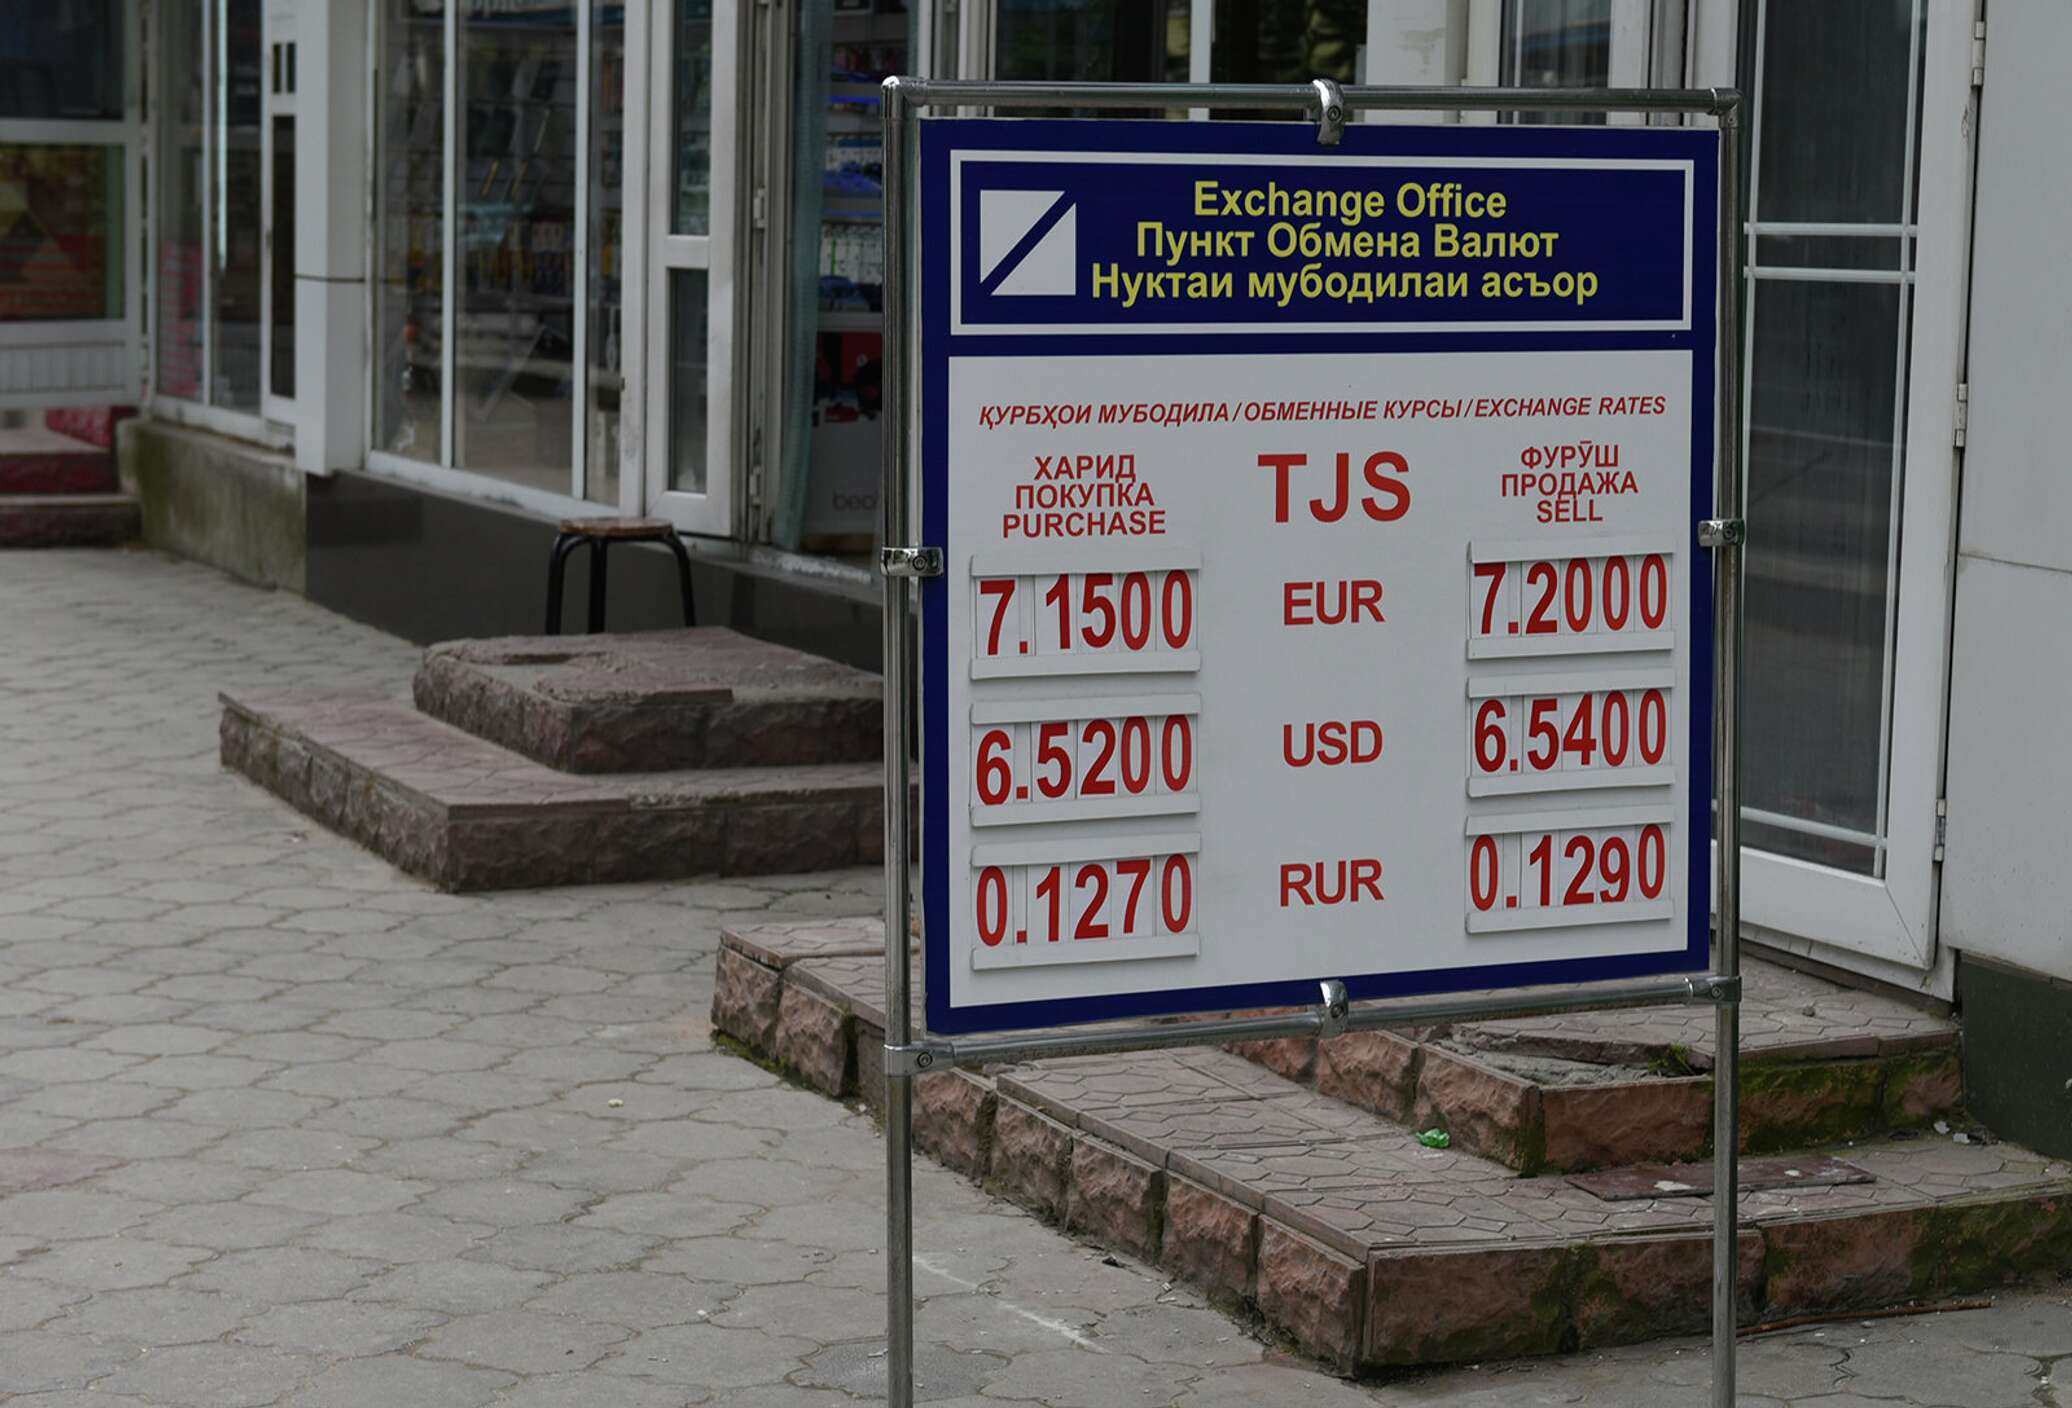 Цены в душанбе в рублях. Обменный пункт. Обменные пункты в Таджикистане. Курсы валют. Курсы валют в Таджикистане.